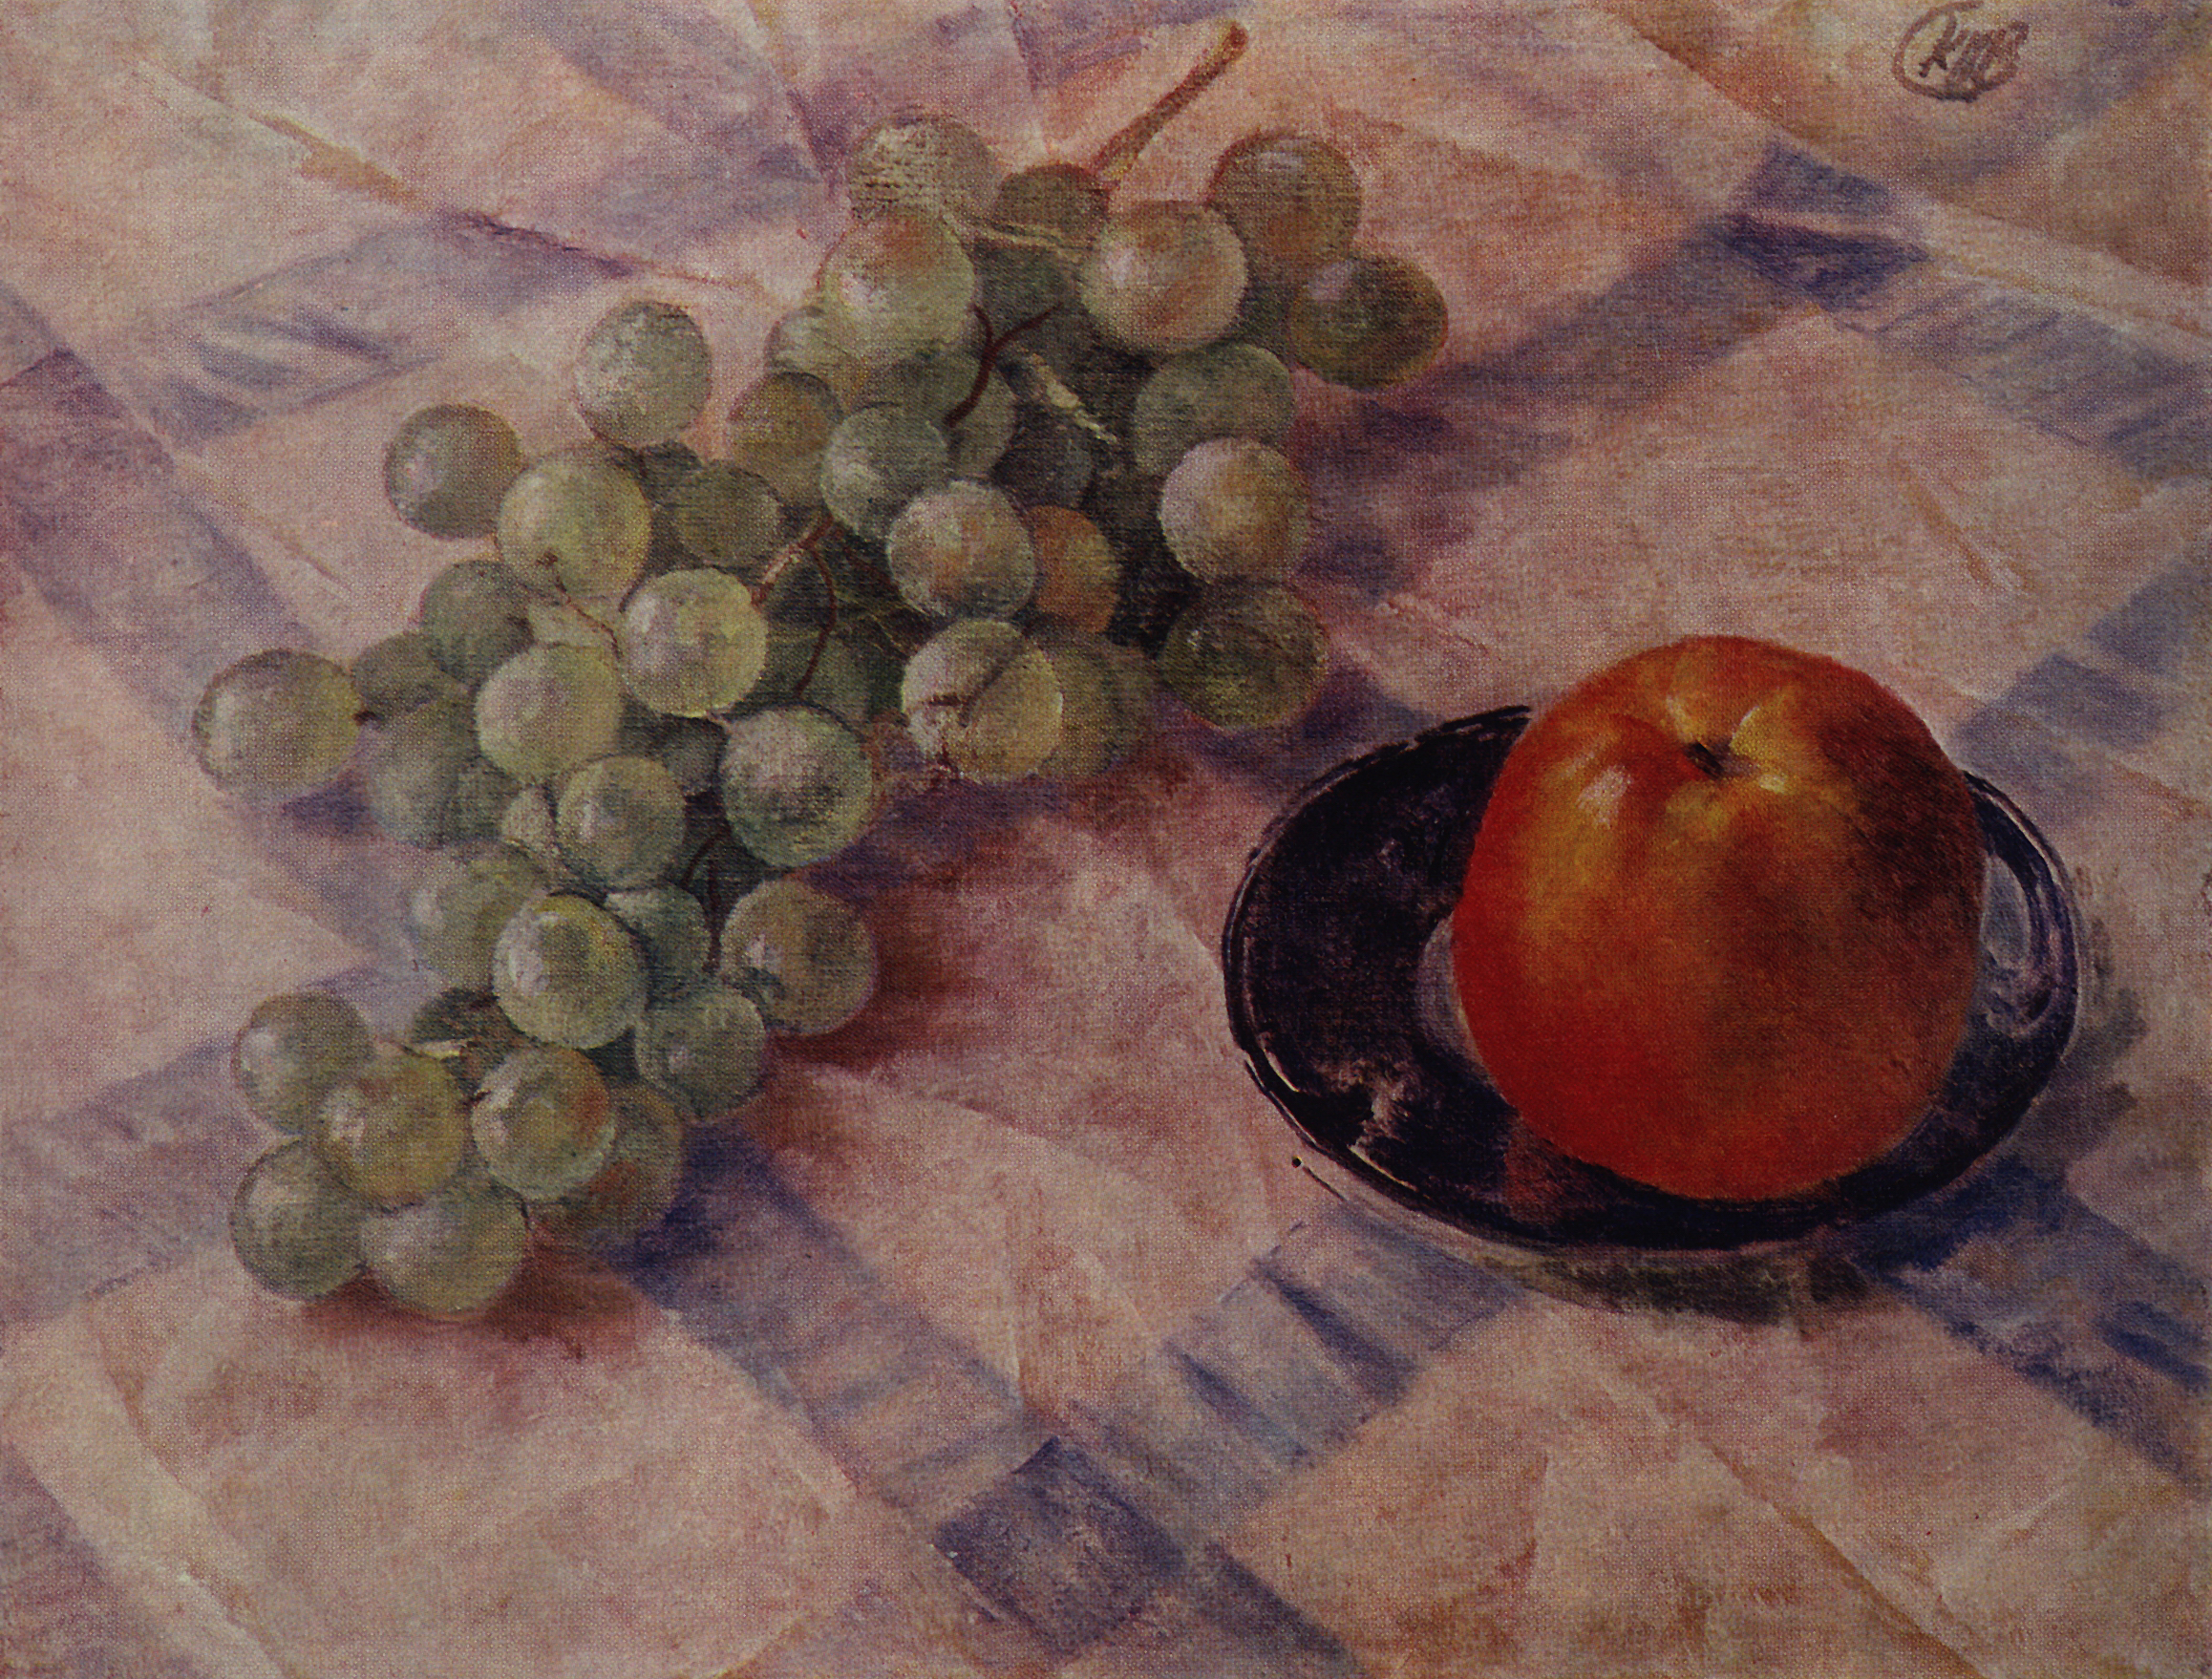 Петров-Водкин. Виноград и яблоки. 1921